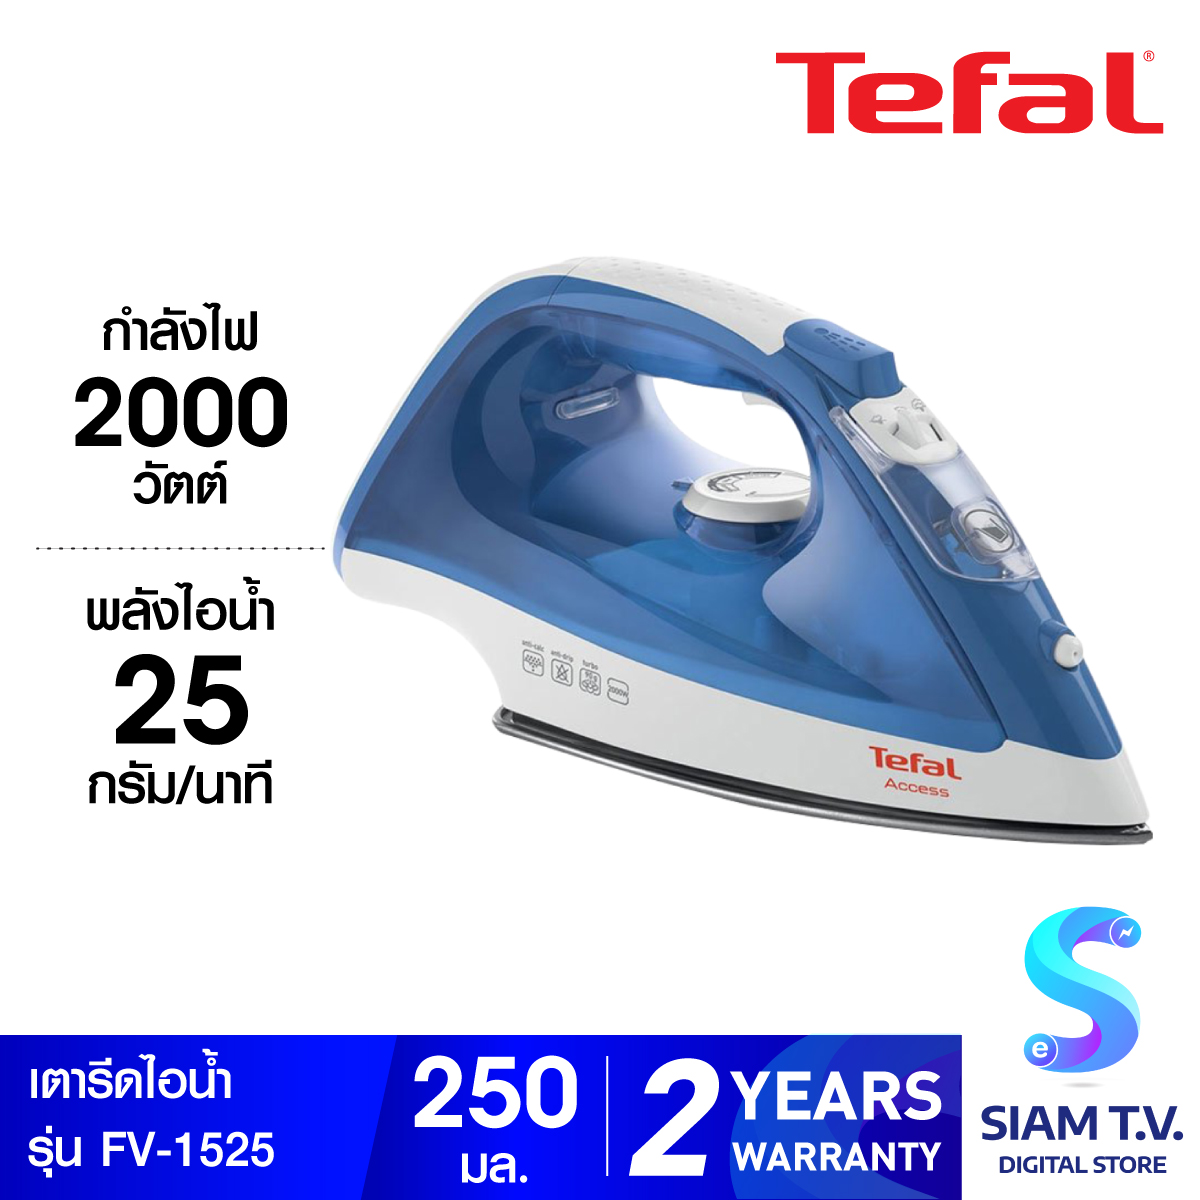 Tefal เตารีดไอน้ำ กำลังไฟ 2000 วัตต์ รุ่น FV1525 - Blue โดย สยามทีวี by Siam T.V.